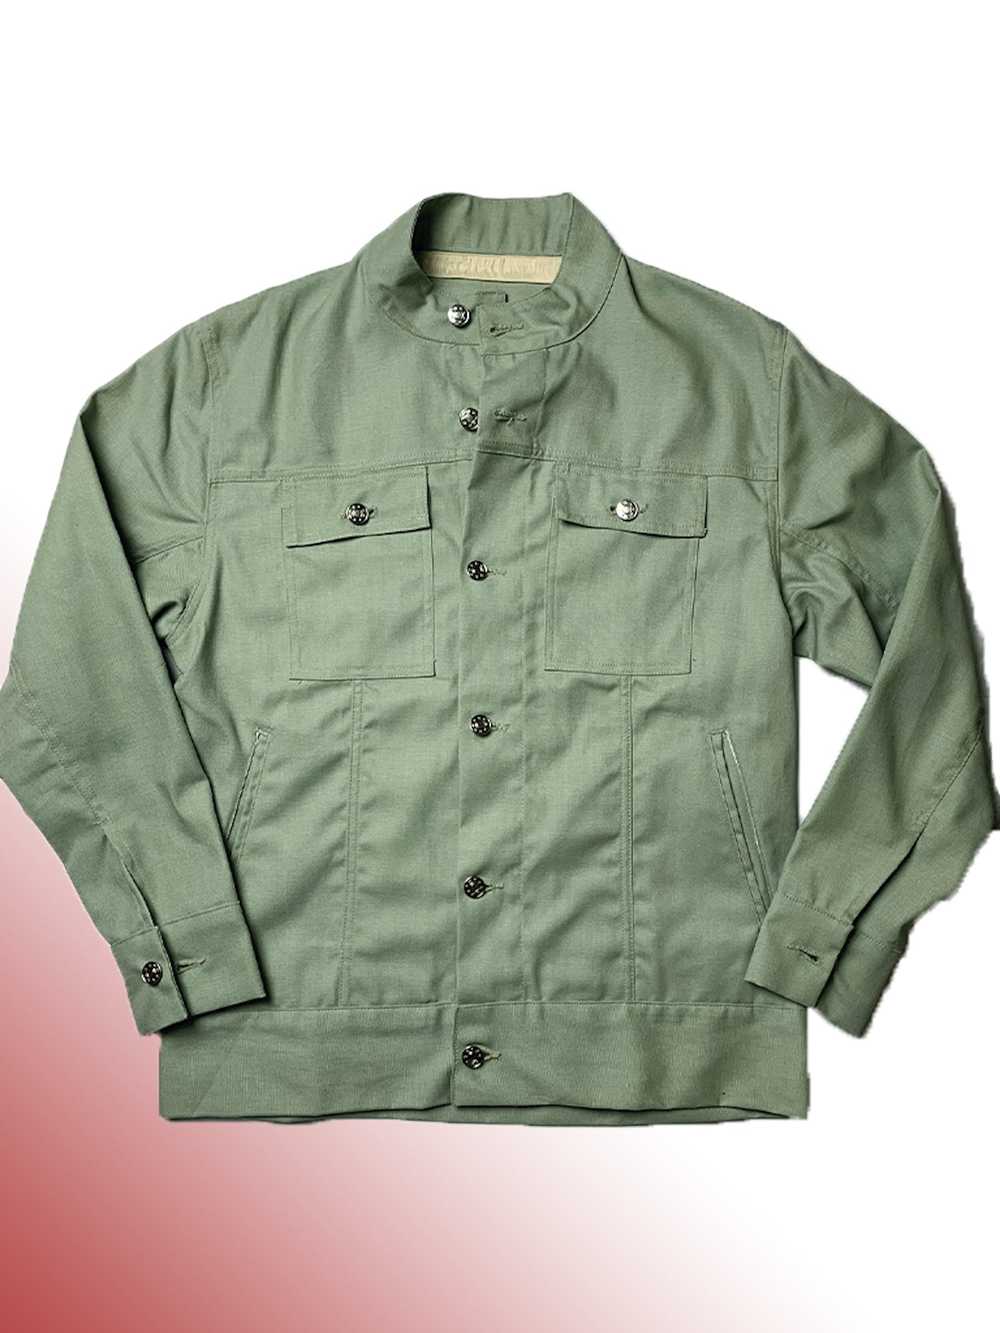 Eckhaus Latta Sage Green Military Shirt Jacket - image 1